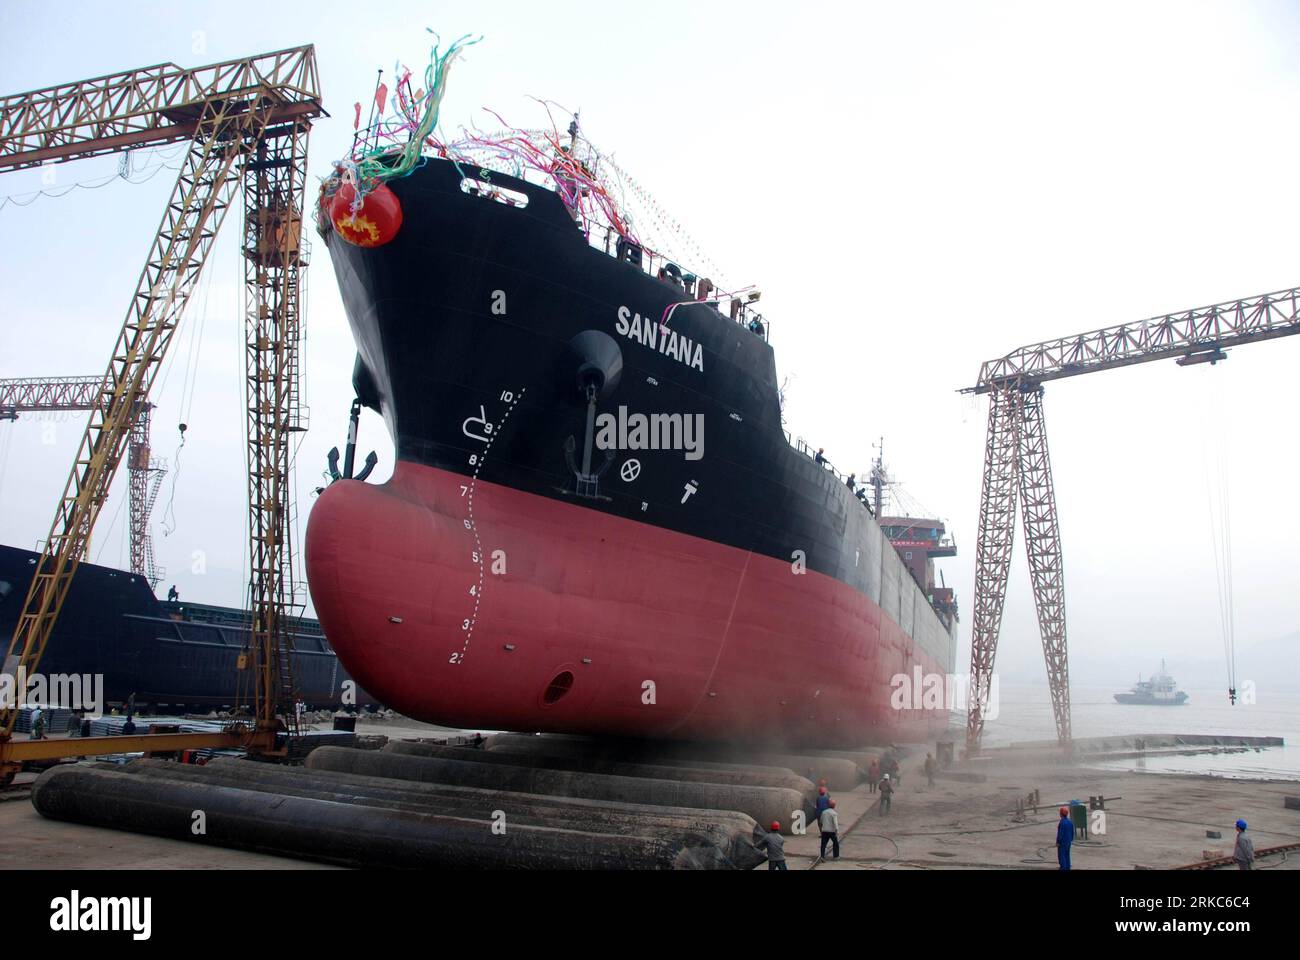 Bildnummer : 54678851 Datum : 21.11.2010 Copyright : imago/Xinhua (101126) -- TAIZHOU, 26 novembre 2010 (Xinhua) -- Un pétrolier chimique de 10 000 tonnes de port en lourd, qui est acheté par un armateur grec, est lancé au port de Haimen à Taizhou, dans la province de Zhejiang dans l'est de la Chine, le 21 novembre 2010. En plus de 40 ans, l'océan vaste et profond a donné à Li Changxian tout sauf les soucis. Mais depuis le début de la crise financière mondiale il y a deux ans, le milliardaire de 44 ans est tombé dans le blues. Debout dans le chantier naval autrefois animé de Hongda qu'il dirigeait à Taizhou, Li Changxian posa sa main sur le R. Banque D'Images